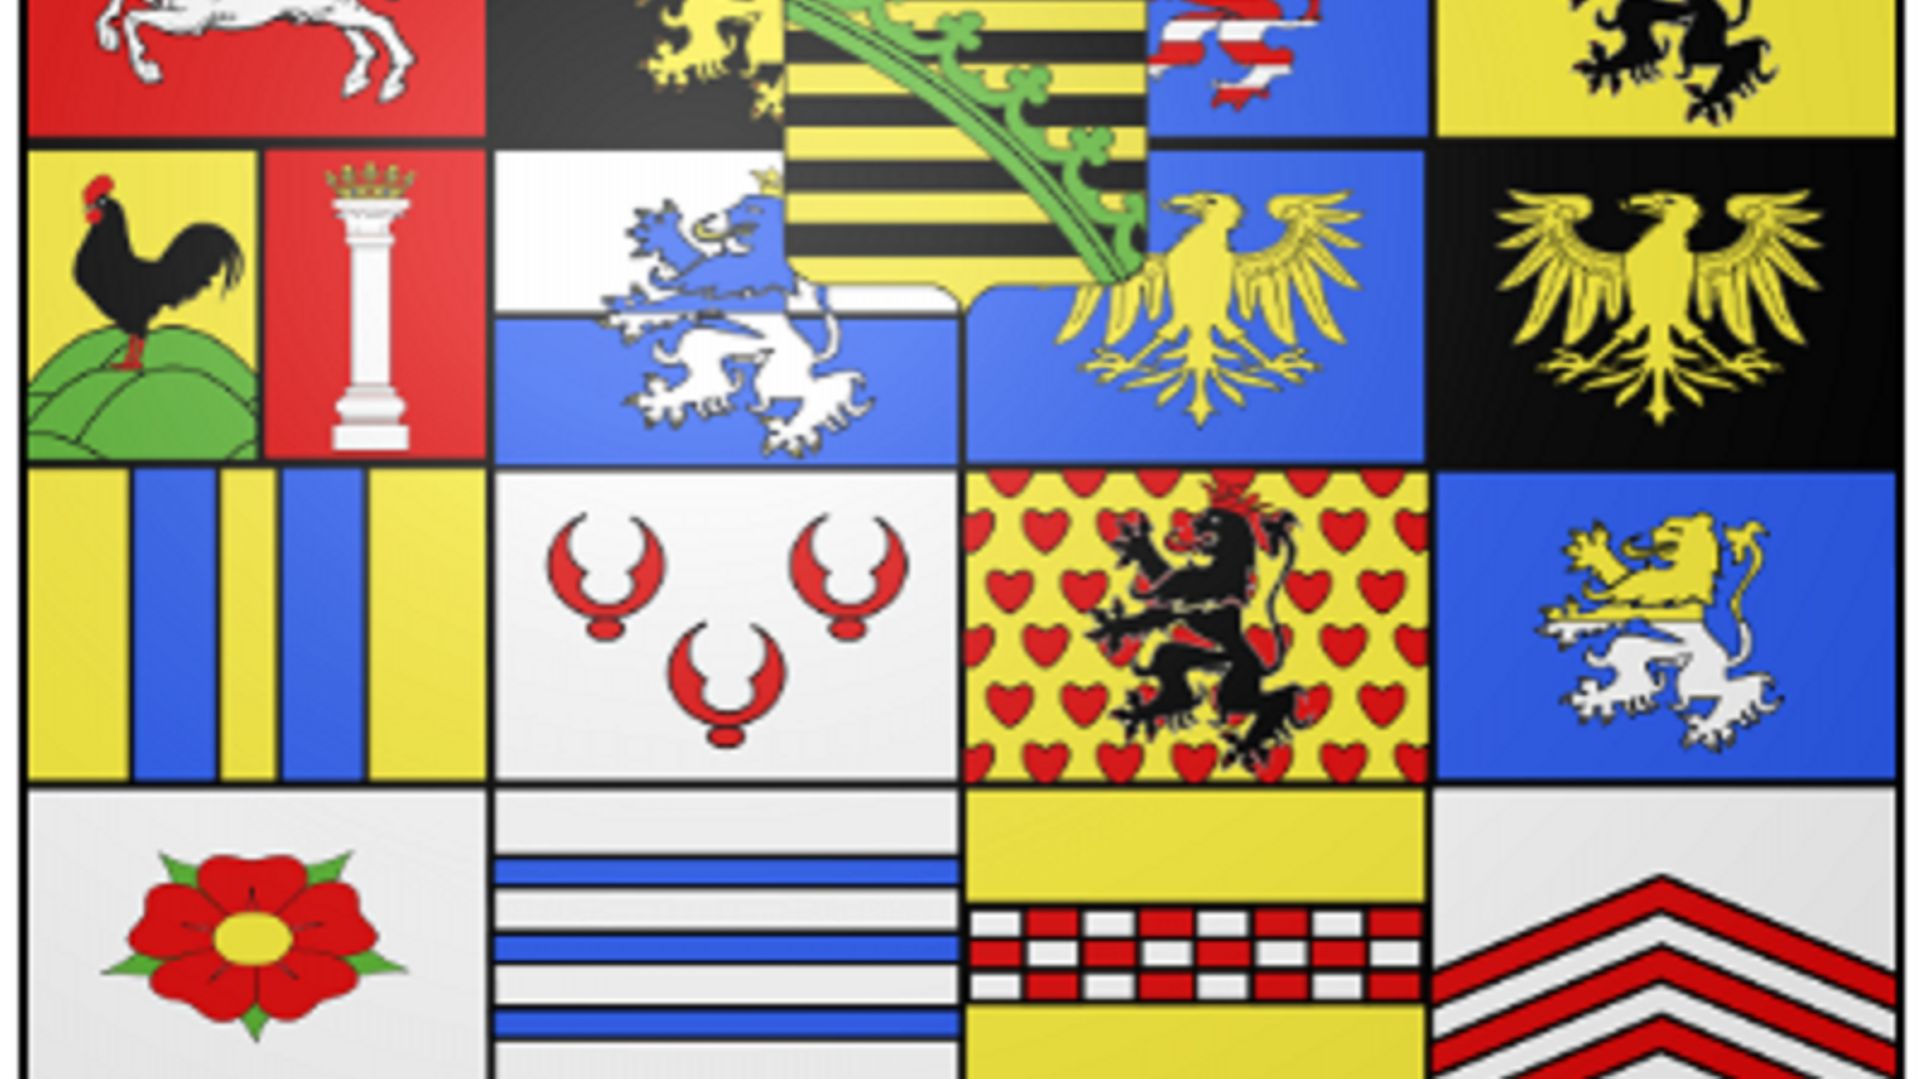 Les armoiries de la maison de Saxe-Cobourg et Gotha.